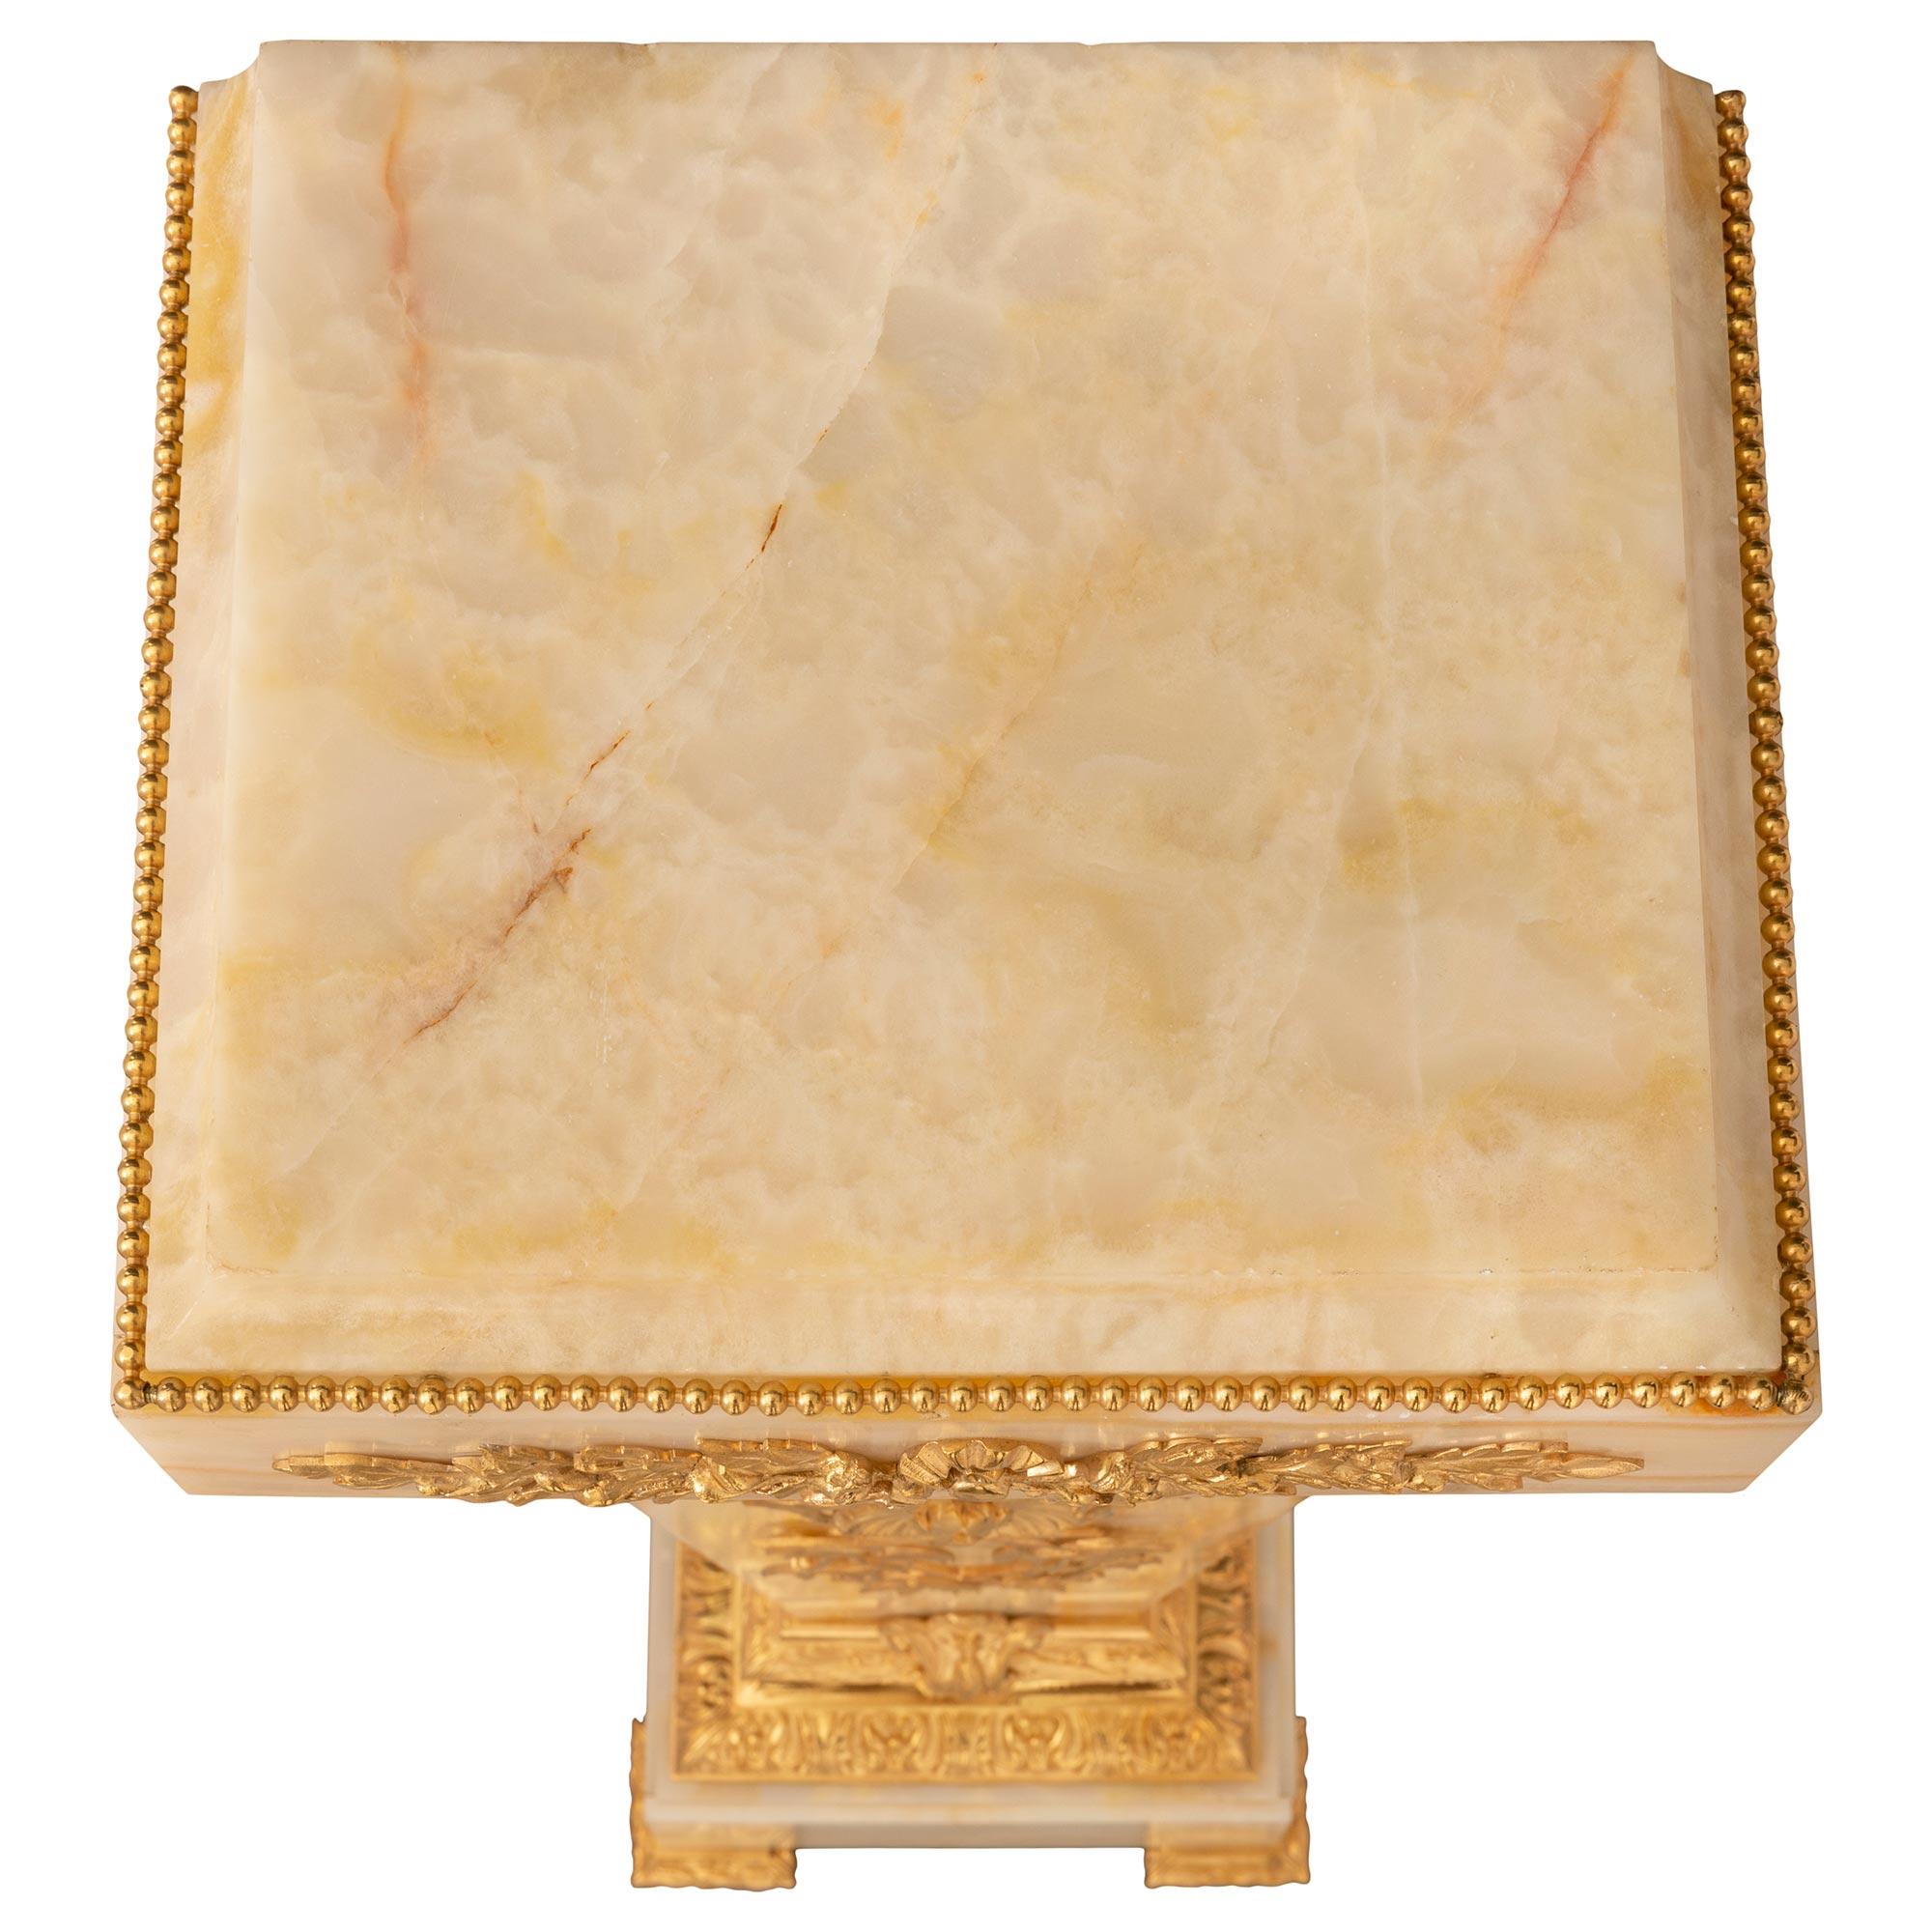 Colonne à piédestal en onyx et bronze doré, de style Louis XVI, datant du XIXe siècle. Le piédestal est surélevé par une base carrée avec des pieds en laurier fleuri et un impressionnant support en bronze ciselé et feuillagé avec une bande de